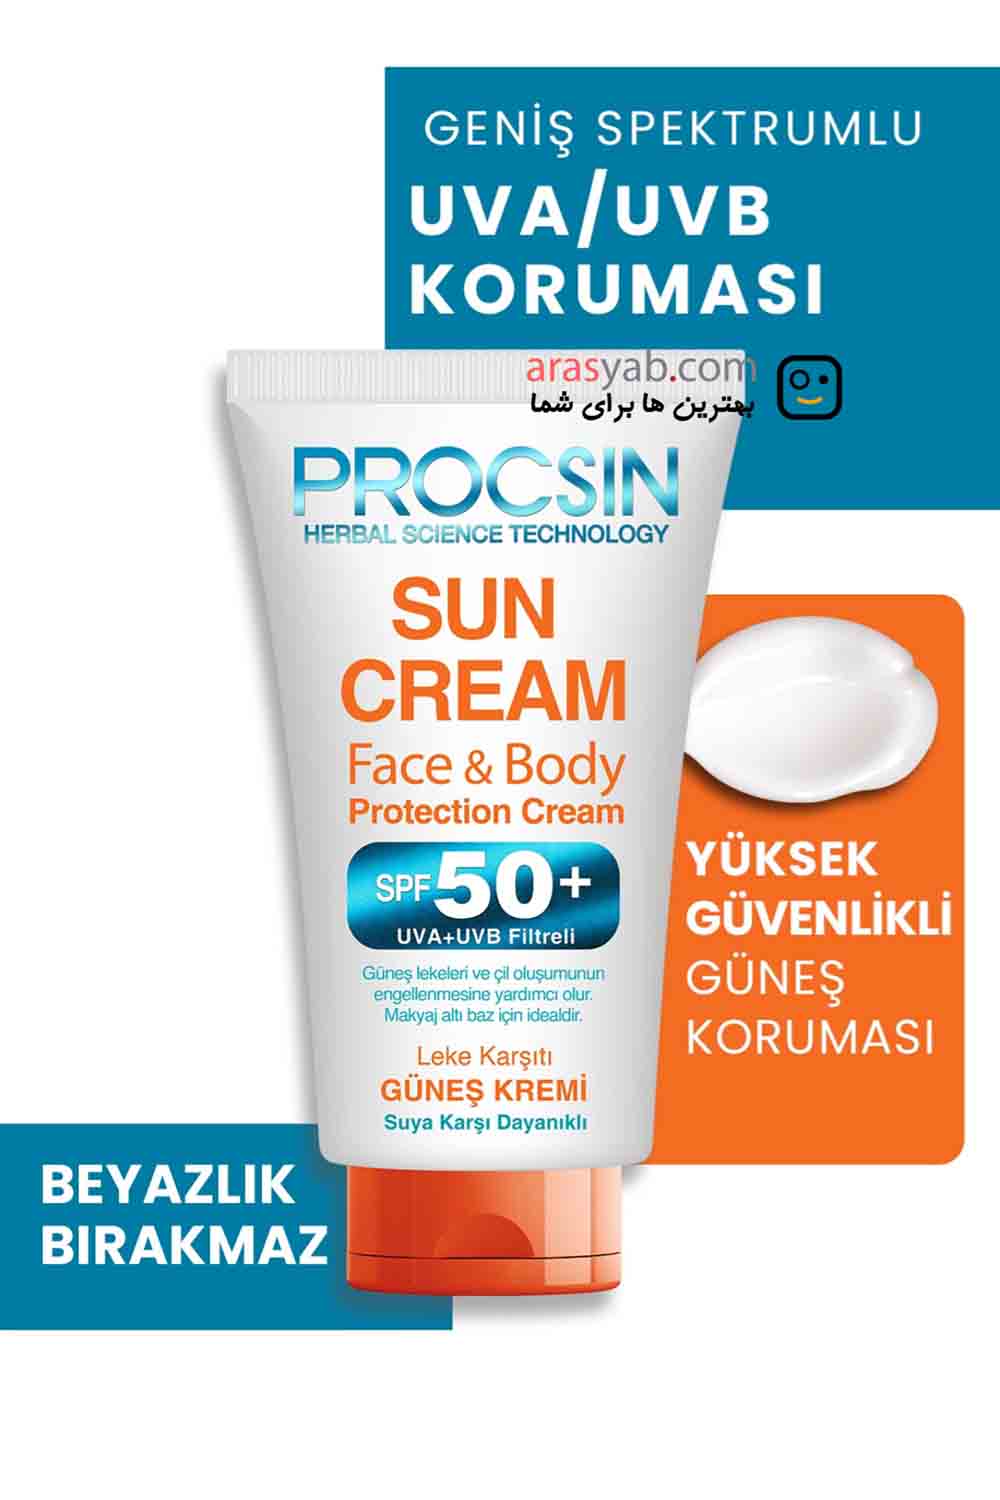 کرم ضد آفتاب ضد لک پروکسین حاوی spf 50 ضد آب و مناسب صورت و بدن